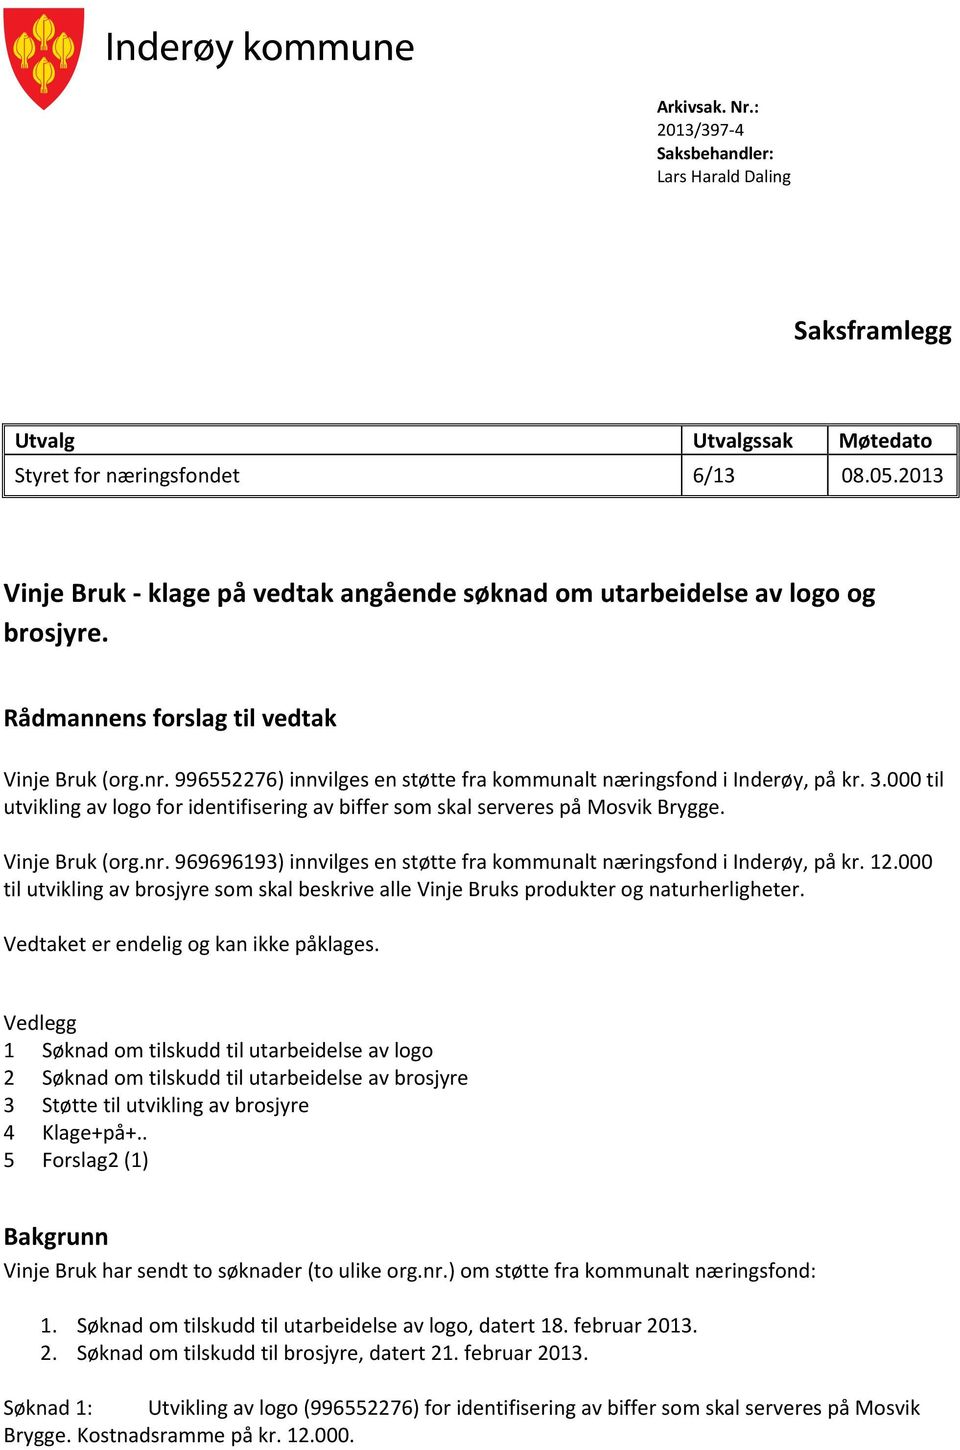 996552276) innvilges en støtte fra kommunalt næringsfond i Inderøy, på kr. 3.000 til utvikling av logo for identifisering av biffer som skal serveres på Mosvik Brygge. Vinje Bruk (org.nr.